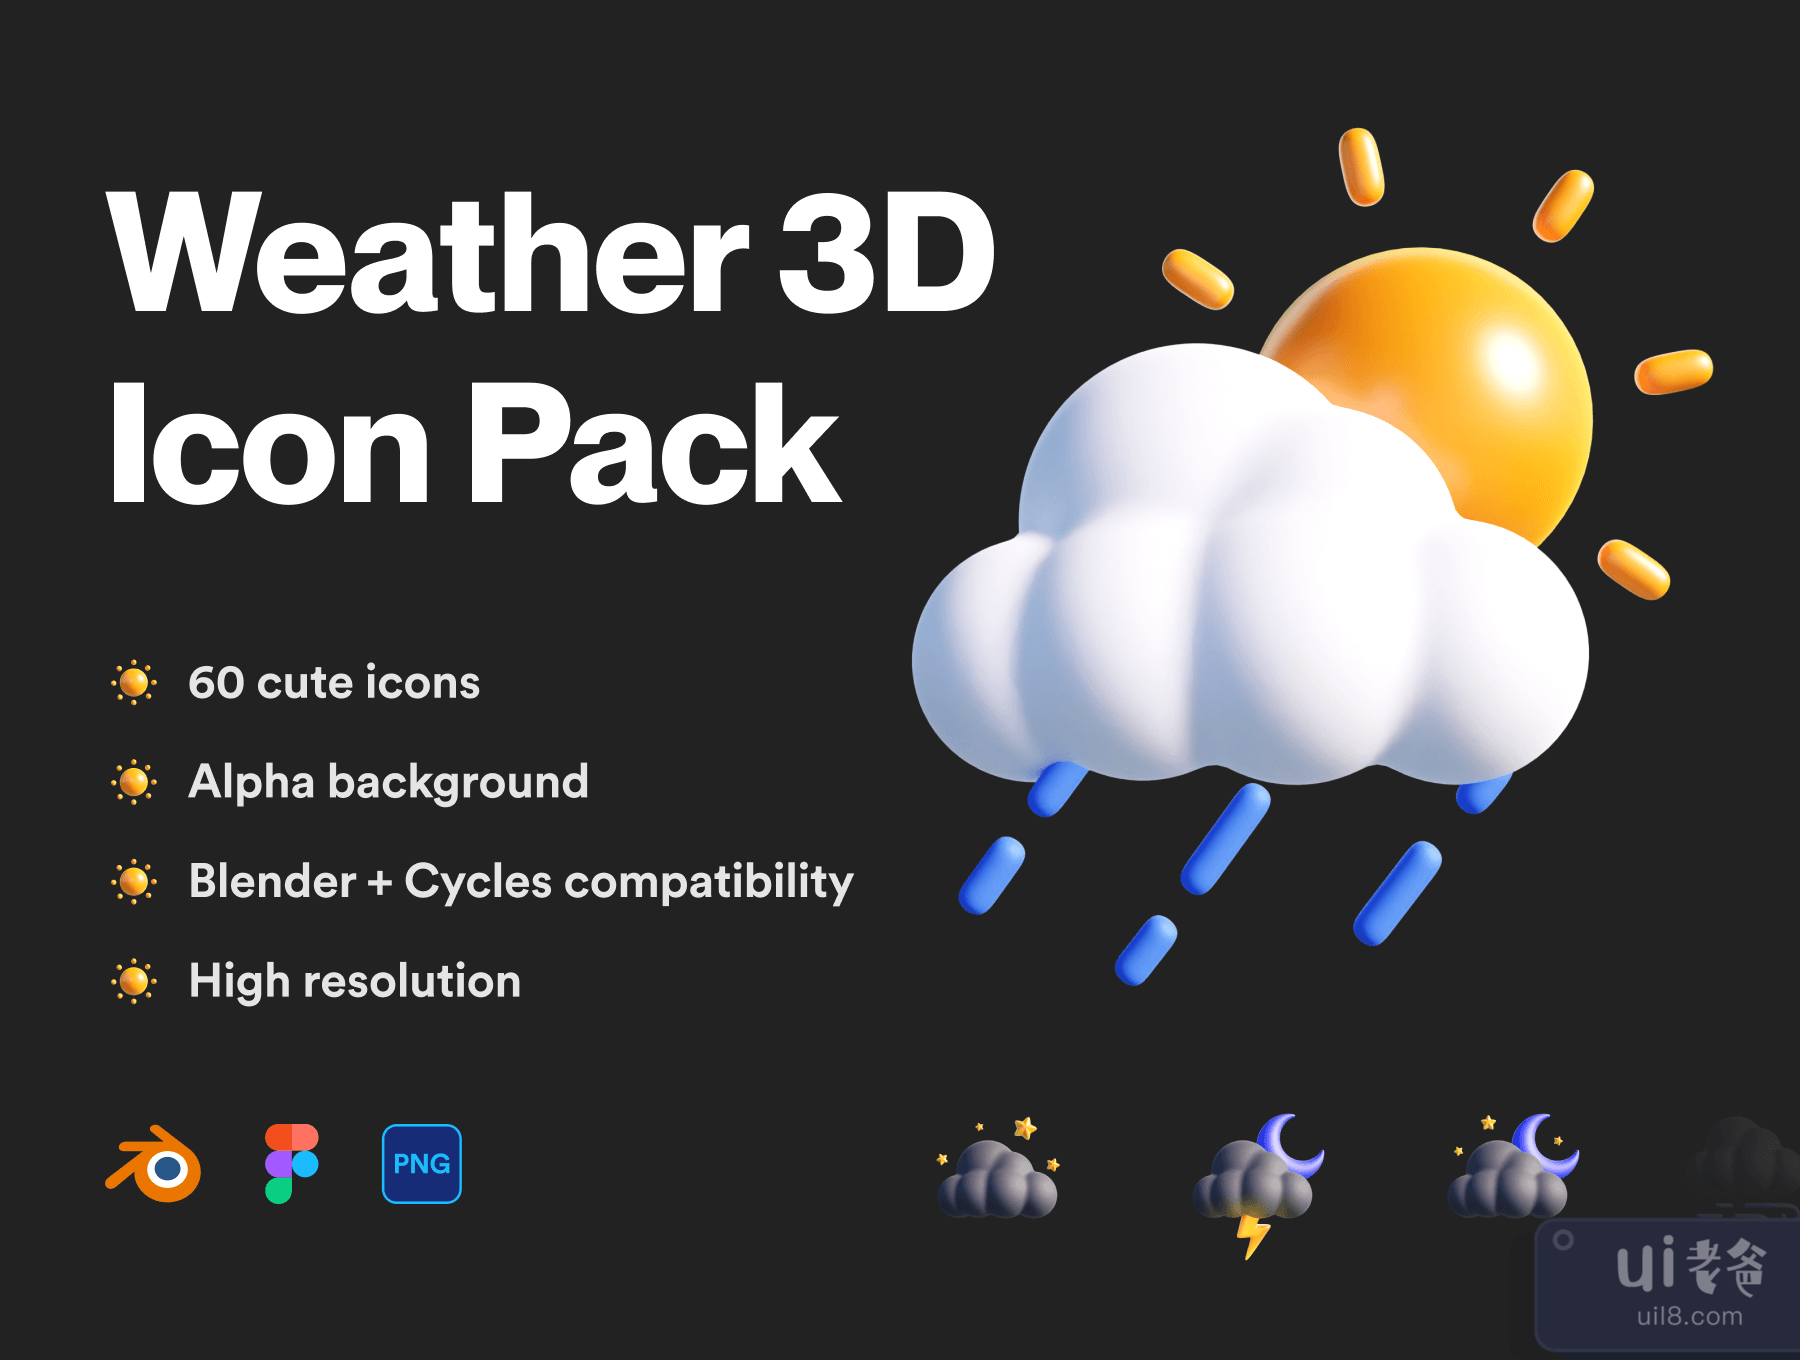 天气3D图标包 (Weather 3D Icon Pack)插图